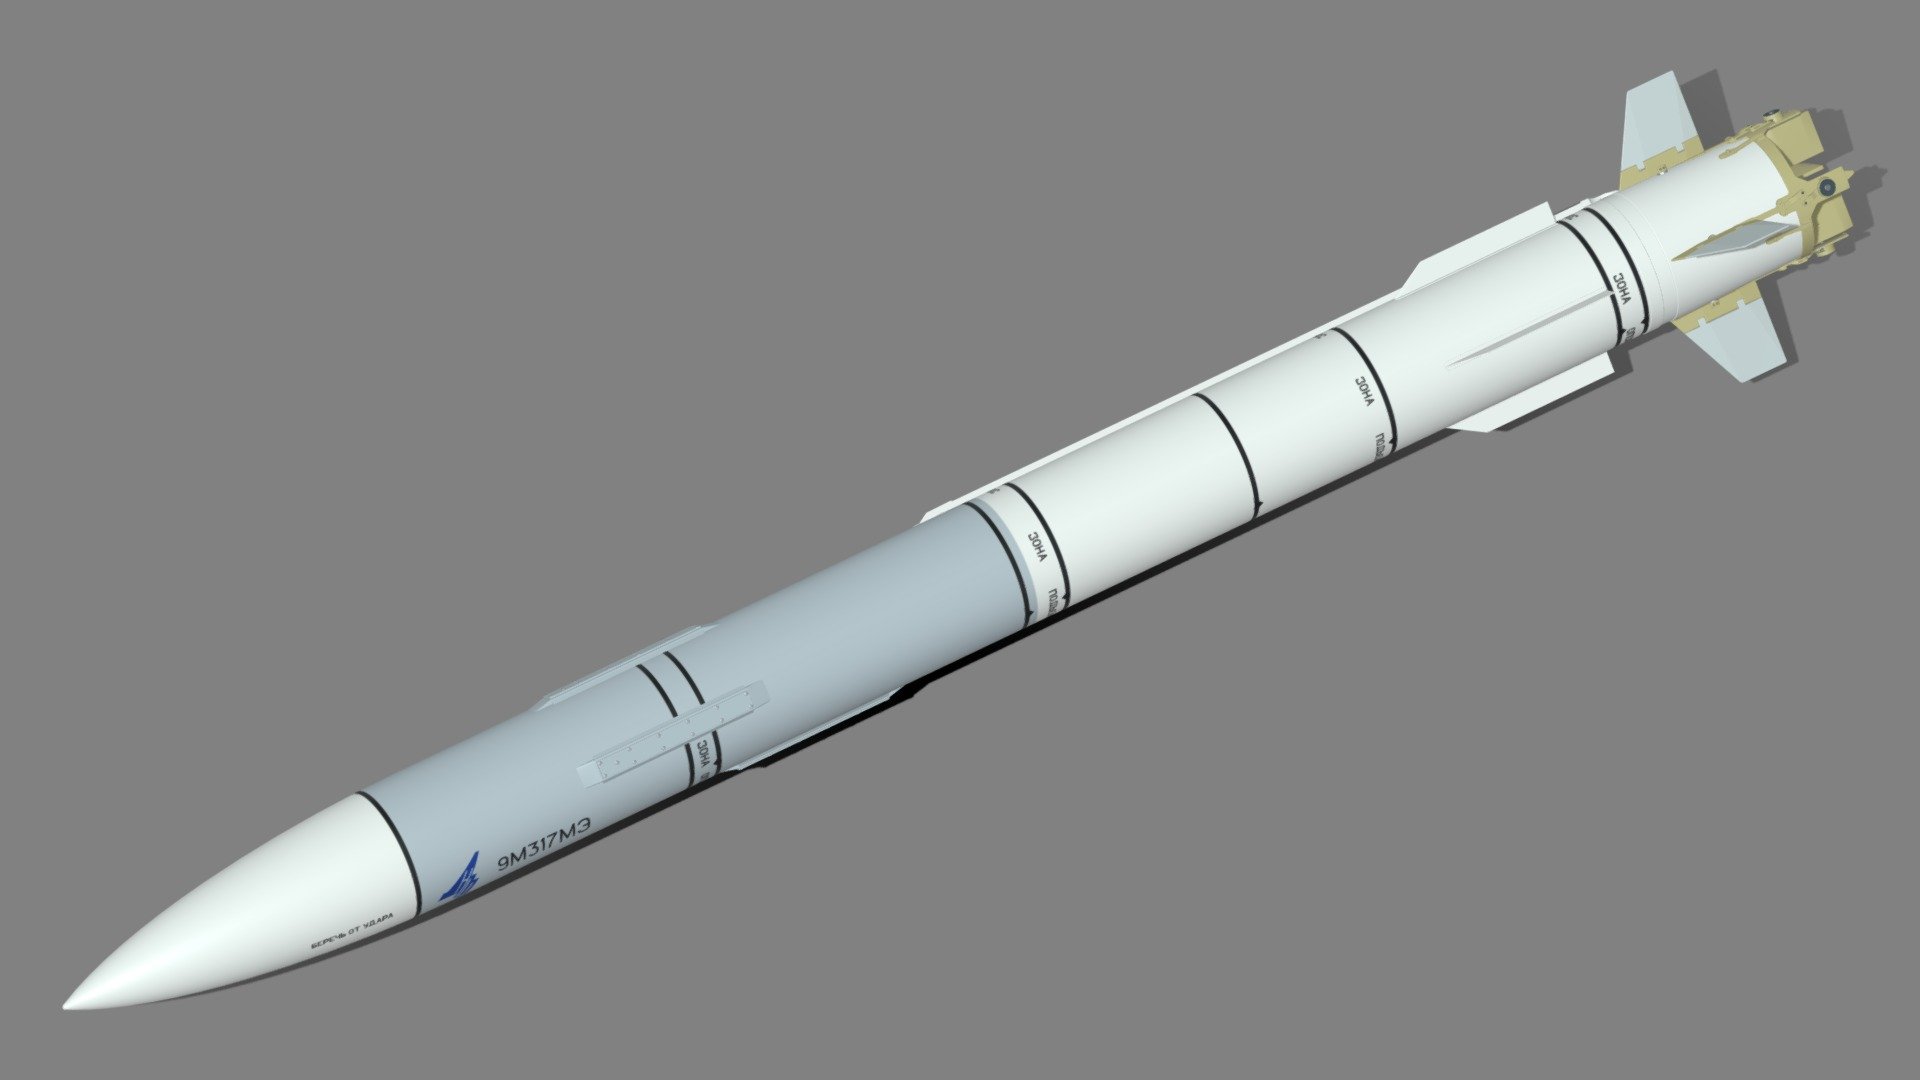 9M317ME missile of Shtil-1 SAM system for 360 degree air defence of battle ships. Modelled by Selena3D 3d model